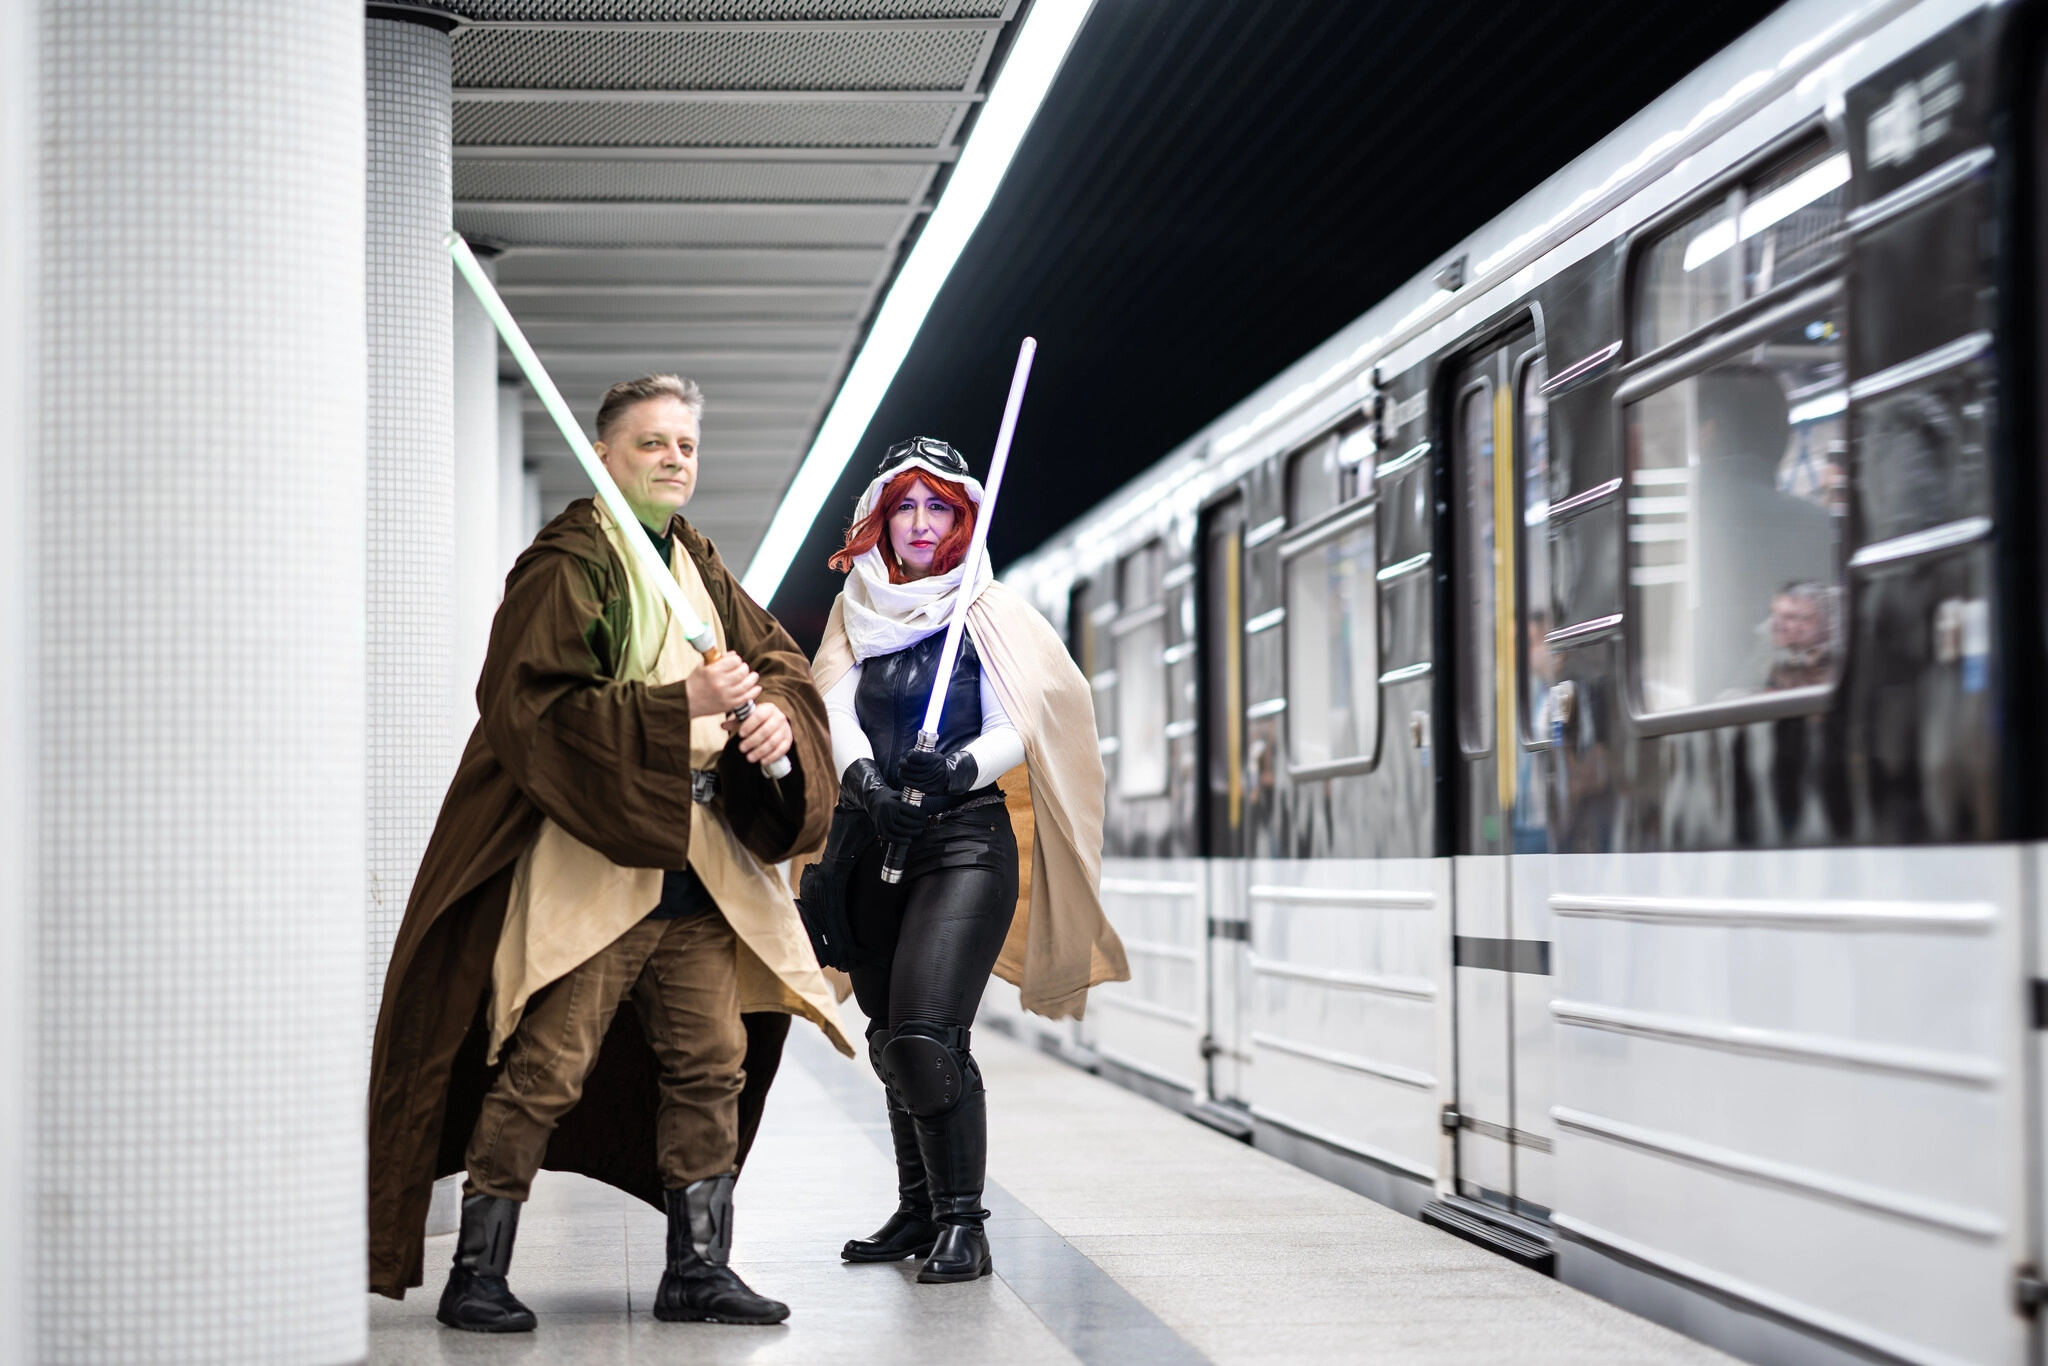 Videó: Star Wars szereplők lepték el a Deák téri metróállomást